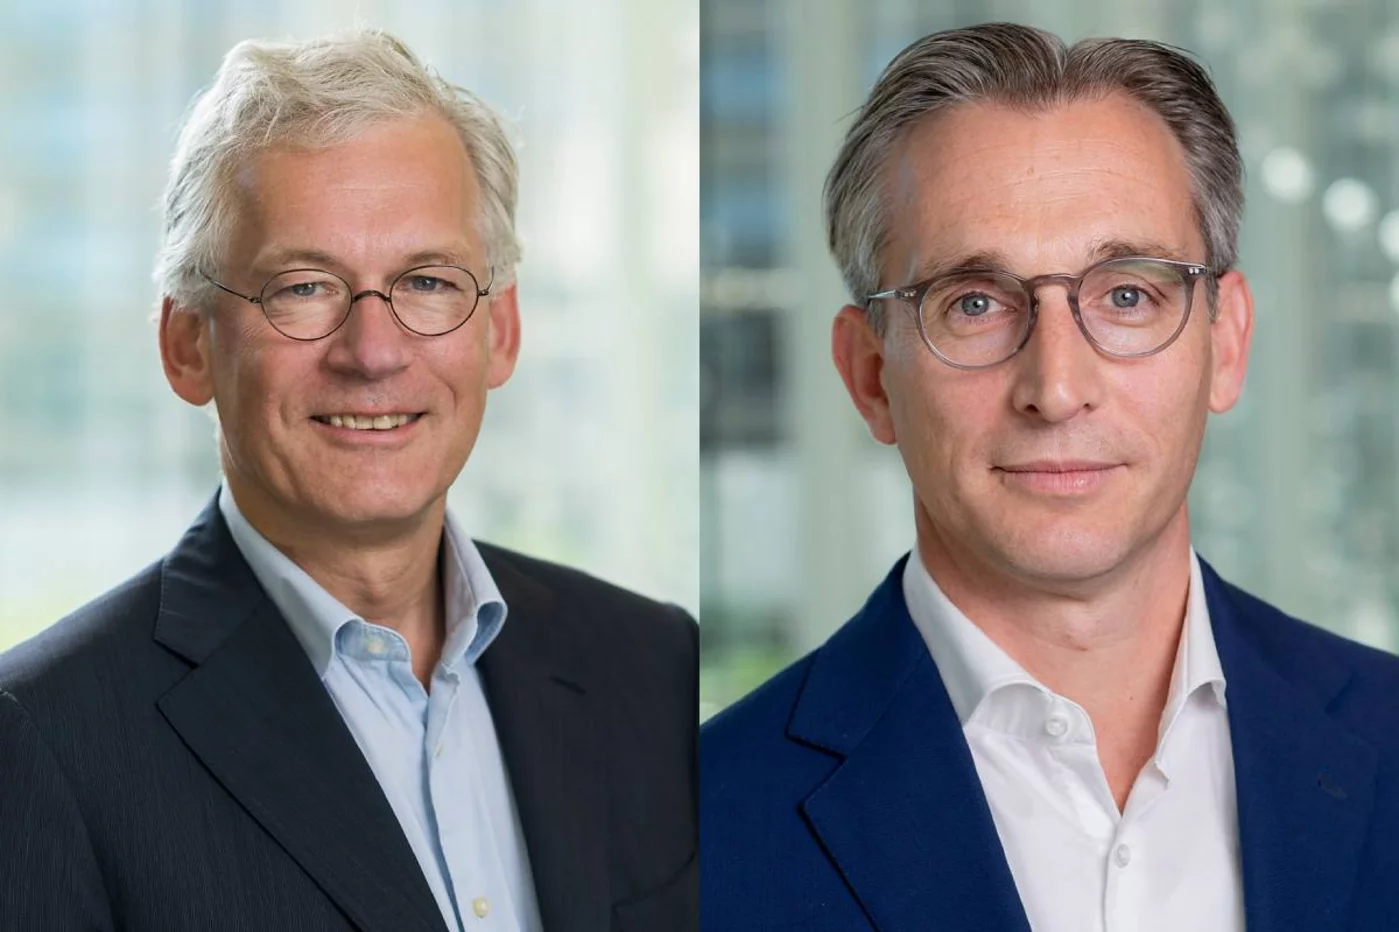 Frans van Houten, presidente y director ejecutivo de Philips, y Roy Jakobs, quien ocupará su cargo a partir del 15 de octubre. Fotos: PHILIPS